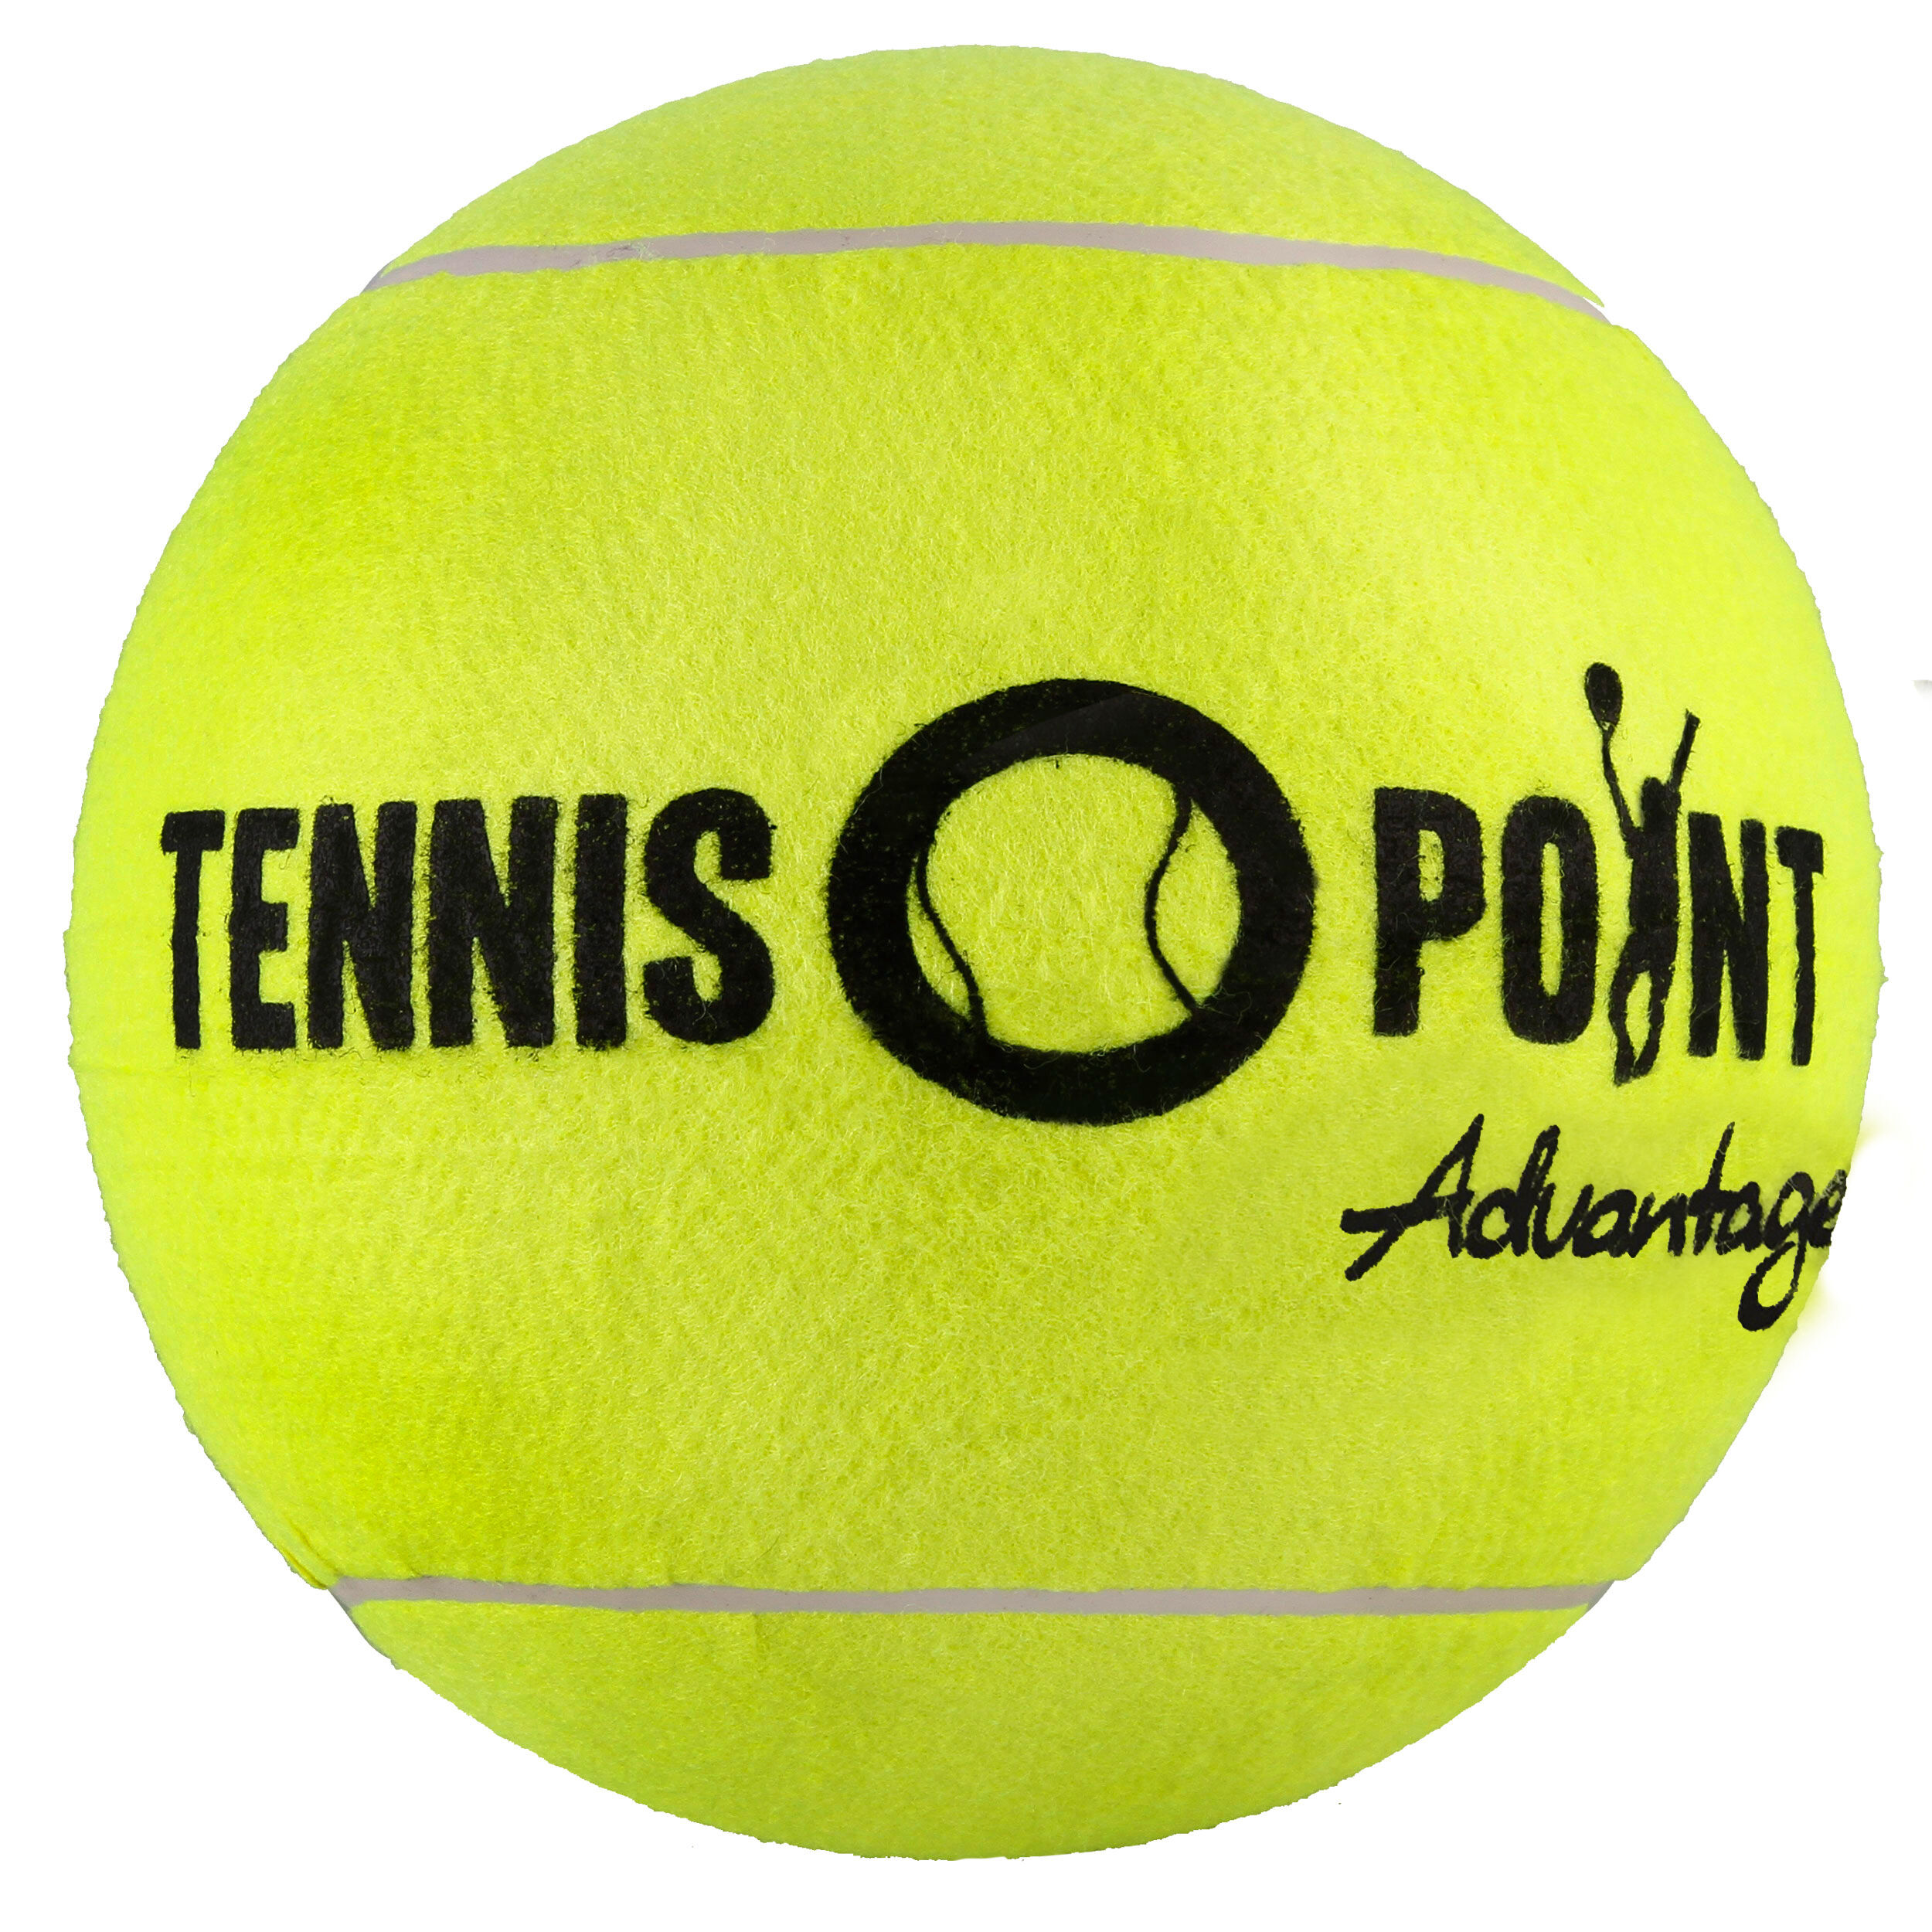 gelb nosize DUNLOP ATP 3er Dose Tennisball